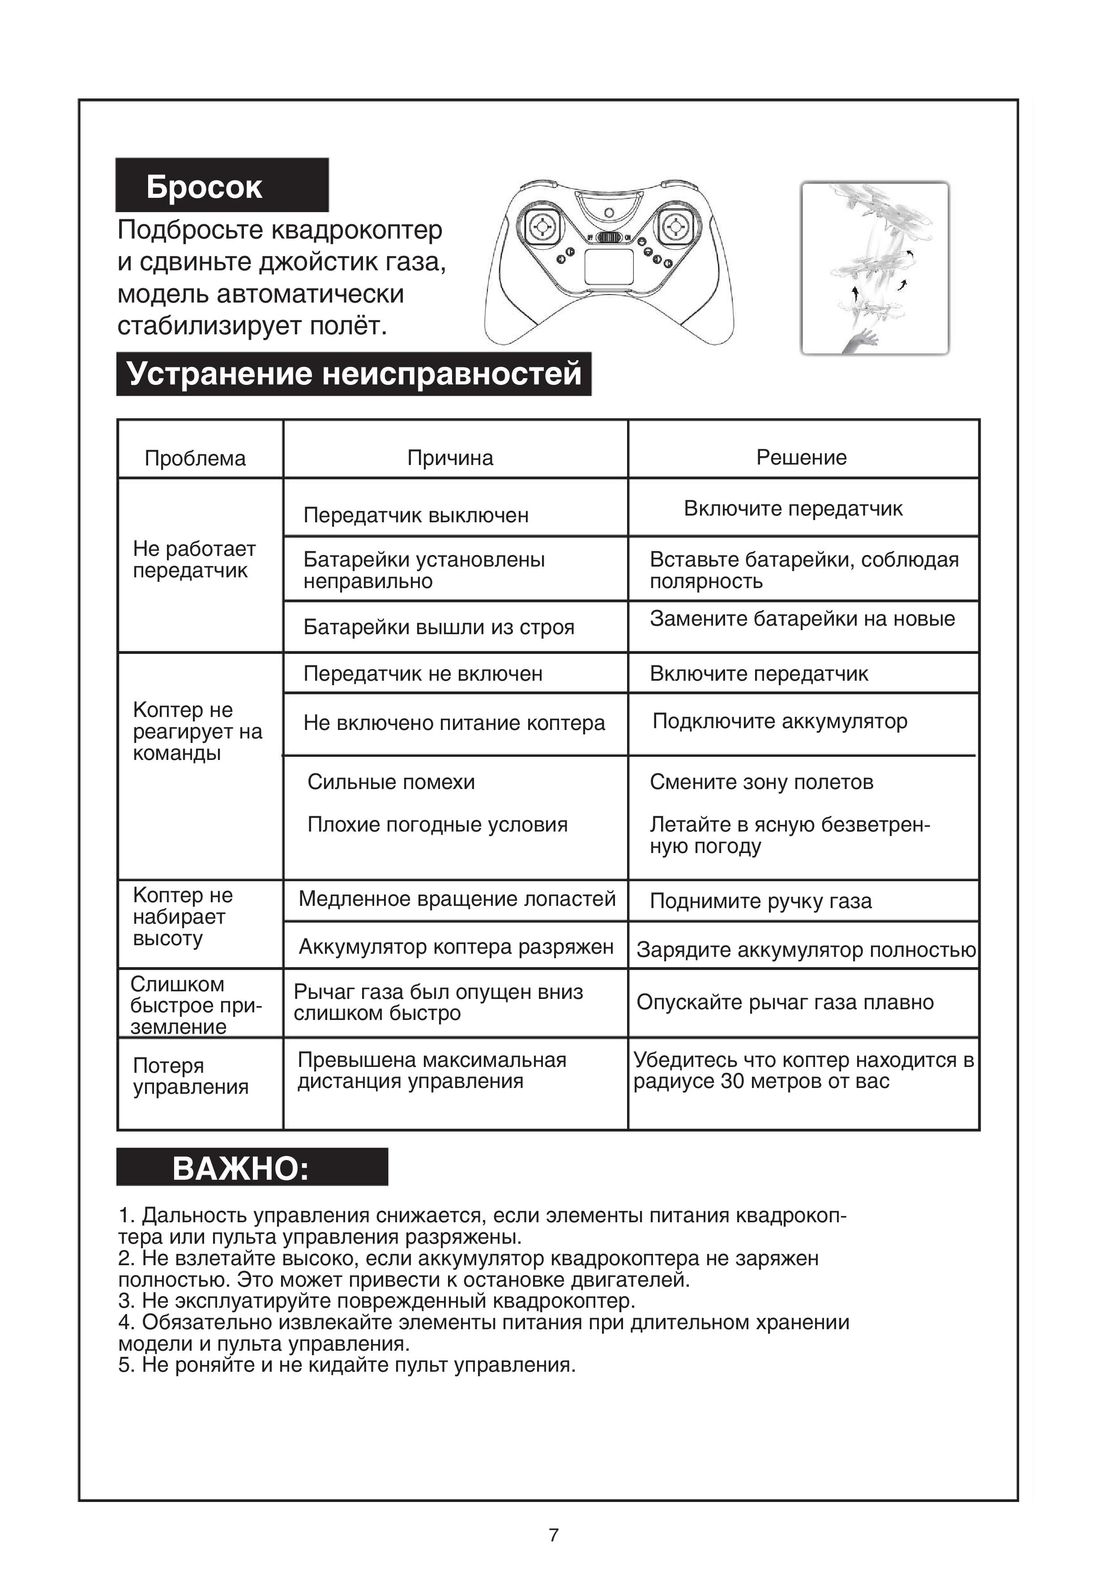 Syma X13 инструкция на русском - страница 7